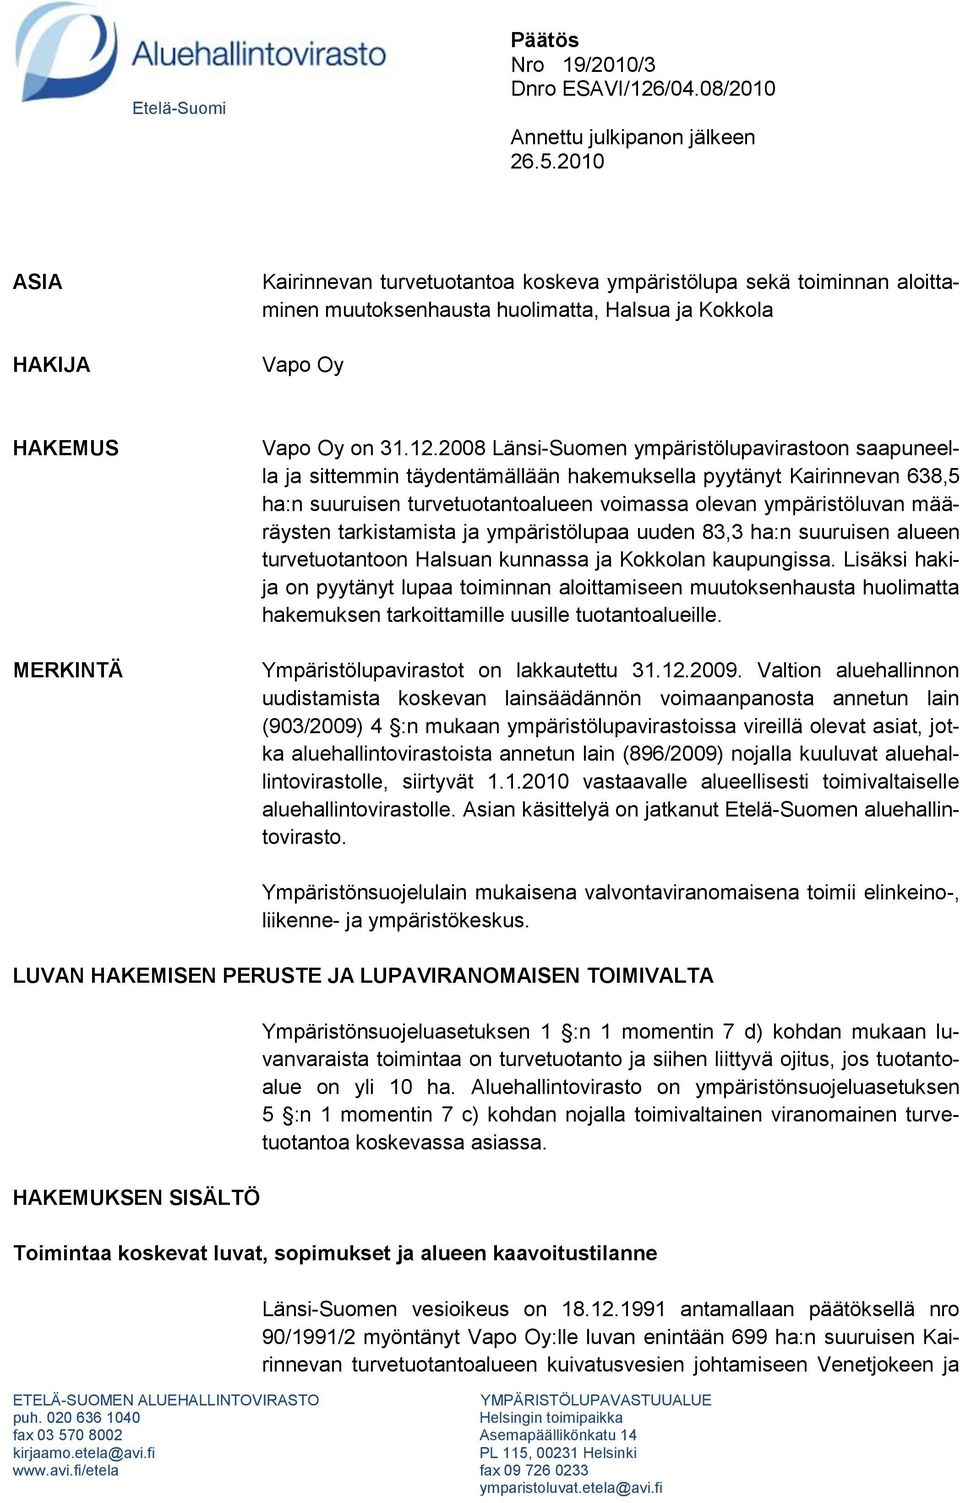 2008 Länsi-Suomen ympäristölupavirastoon saapuneella ja sittemmin täydentämällään hakemuksella pyytänyt Kairinnevan 638,5 ha:n suuruisen turvetuotantoalueen voimassa olevan ympäristöluvan määräysten